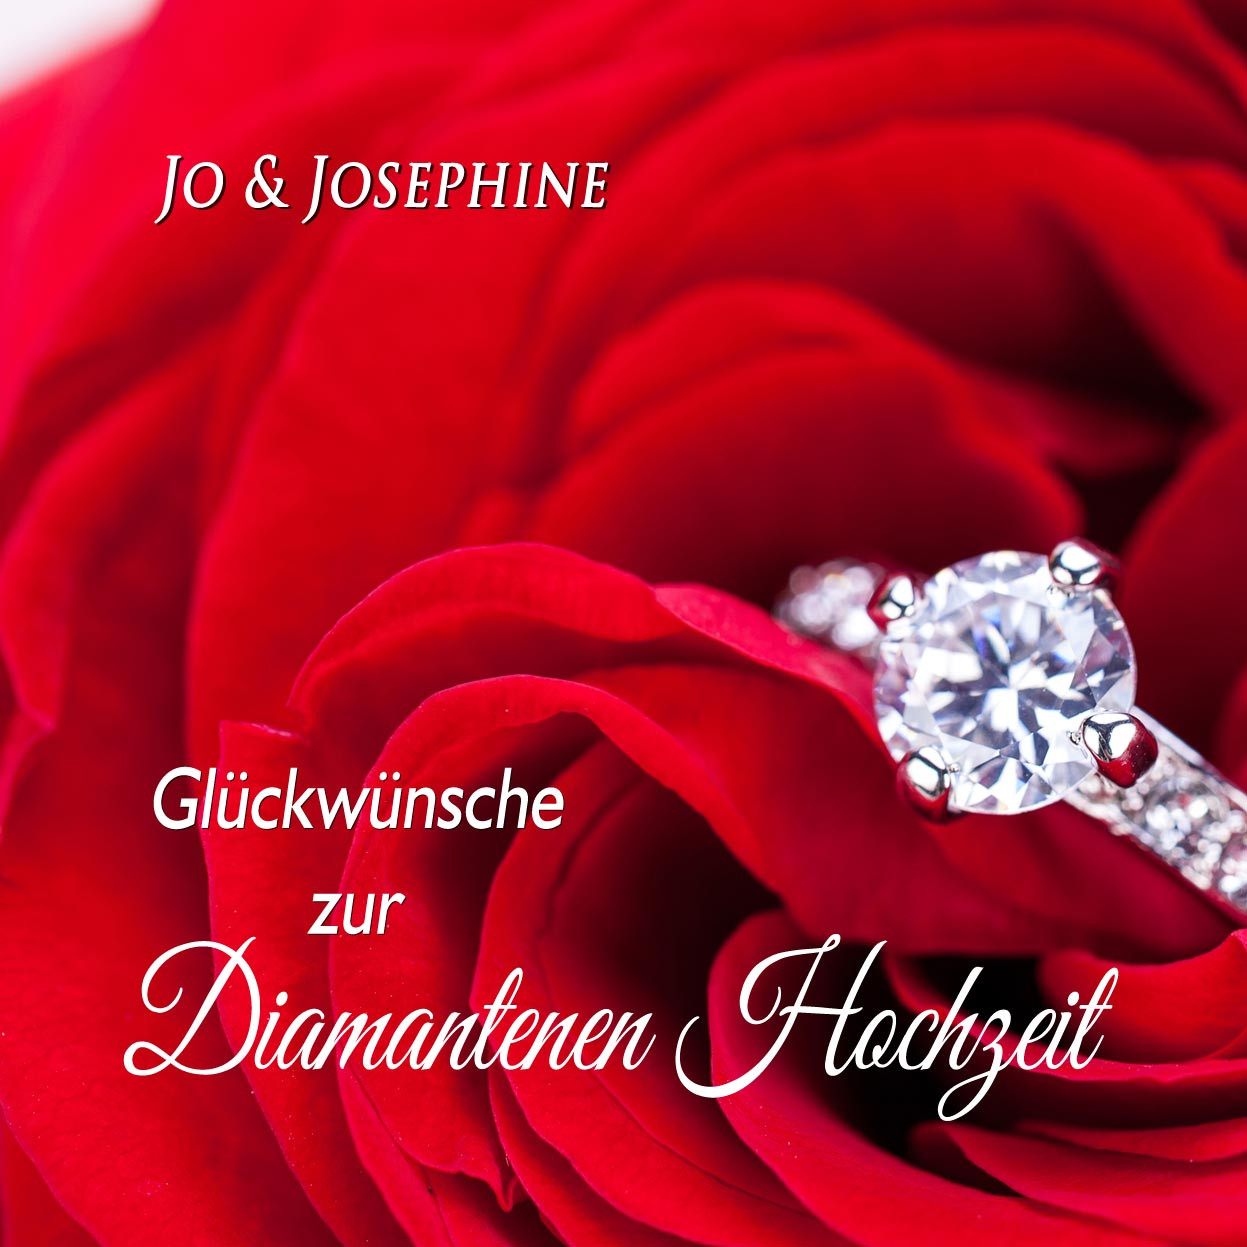 Glückwunsch Diamantene Hochzeit
 "Glückwünsche zur Diamantenen Hochzeit" Lied als MP3